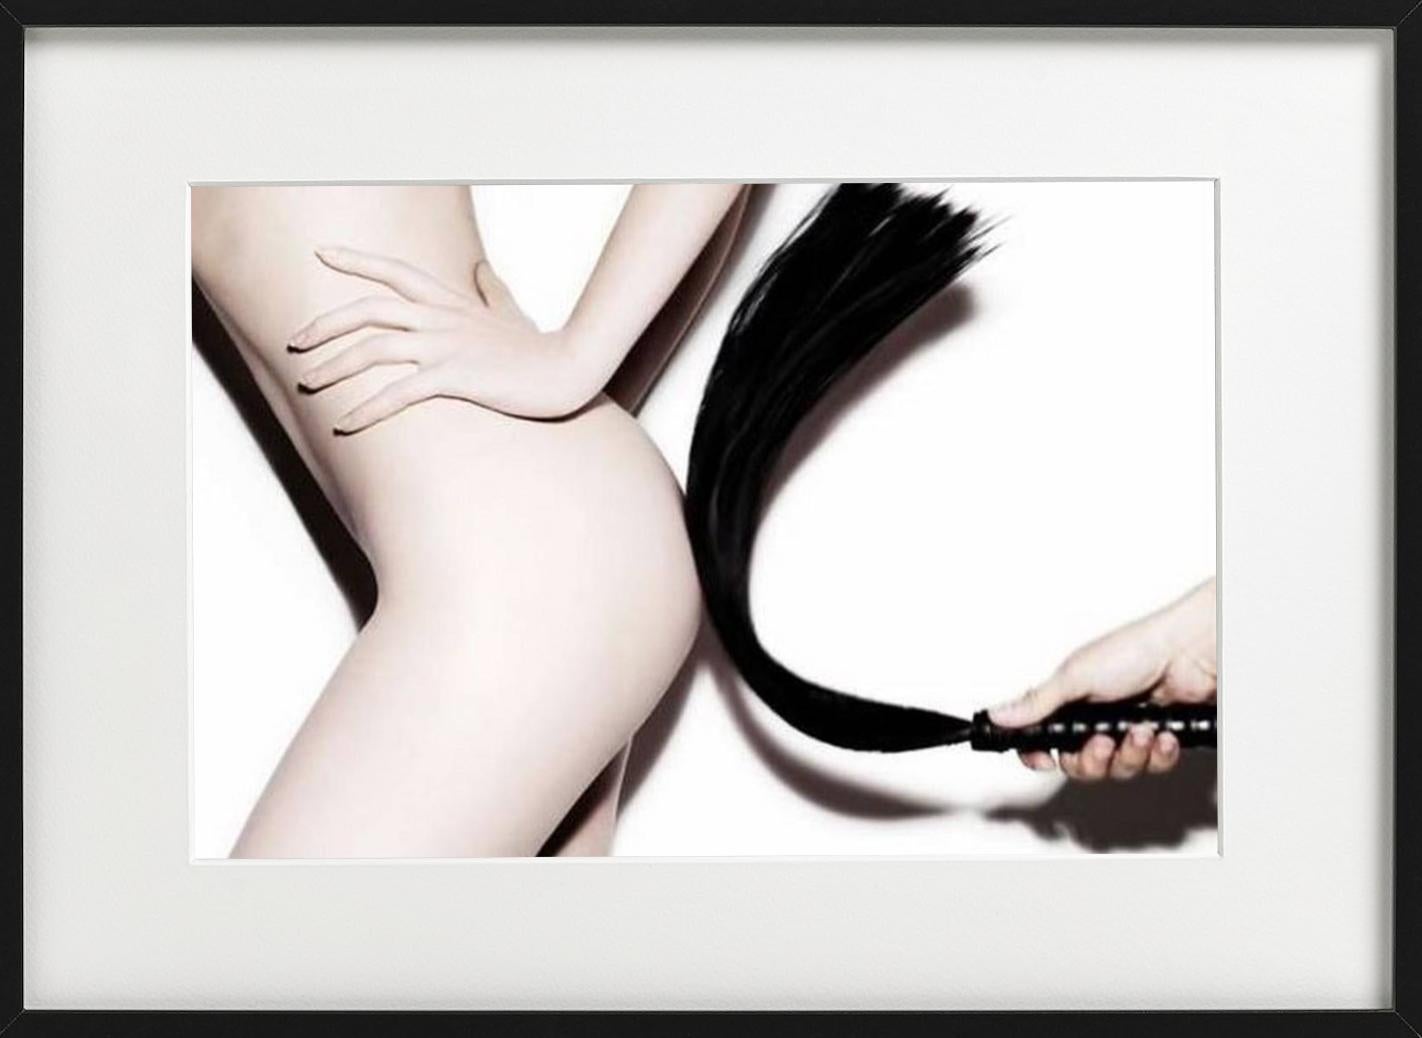 Sans titre - gros plan de mannequin nue épousée, photographie d'art, 2010 - Beige Nude Photograph par Rankin